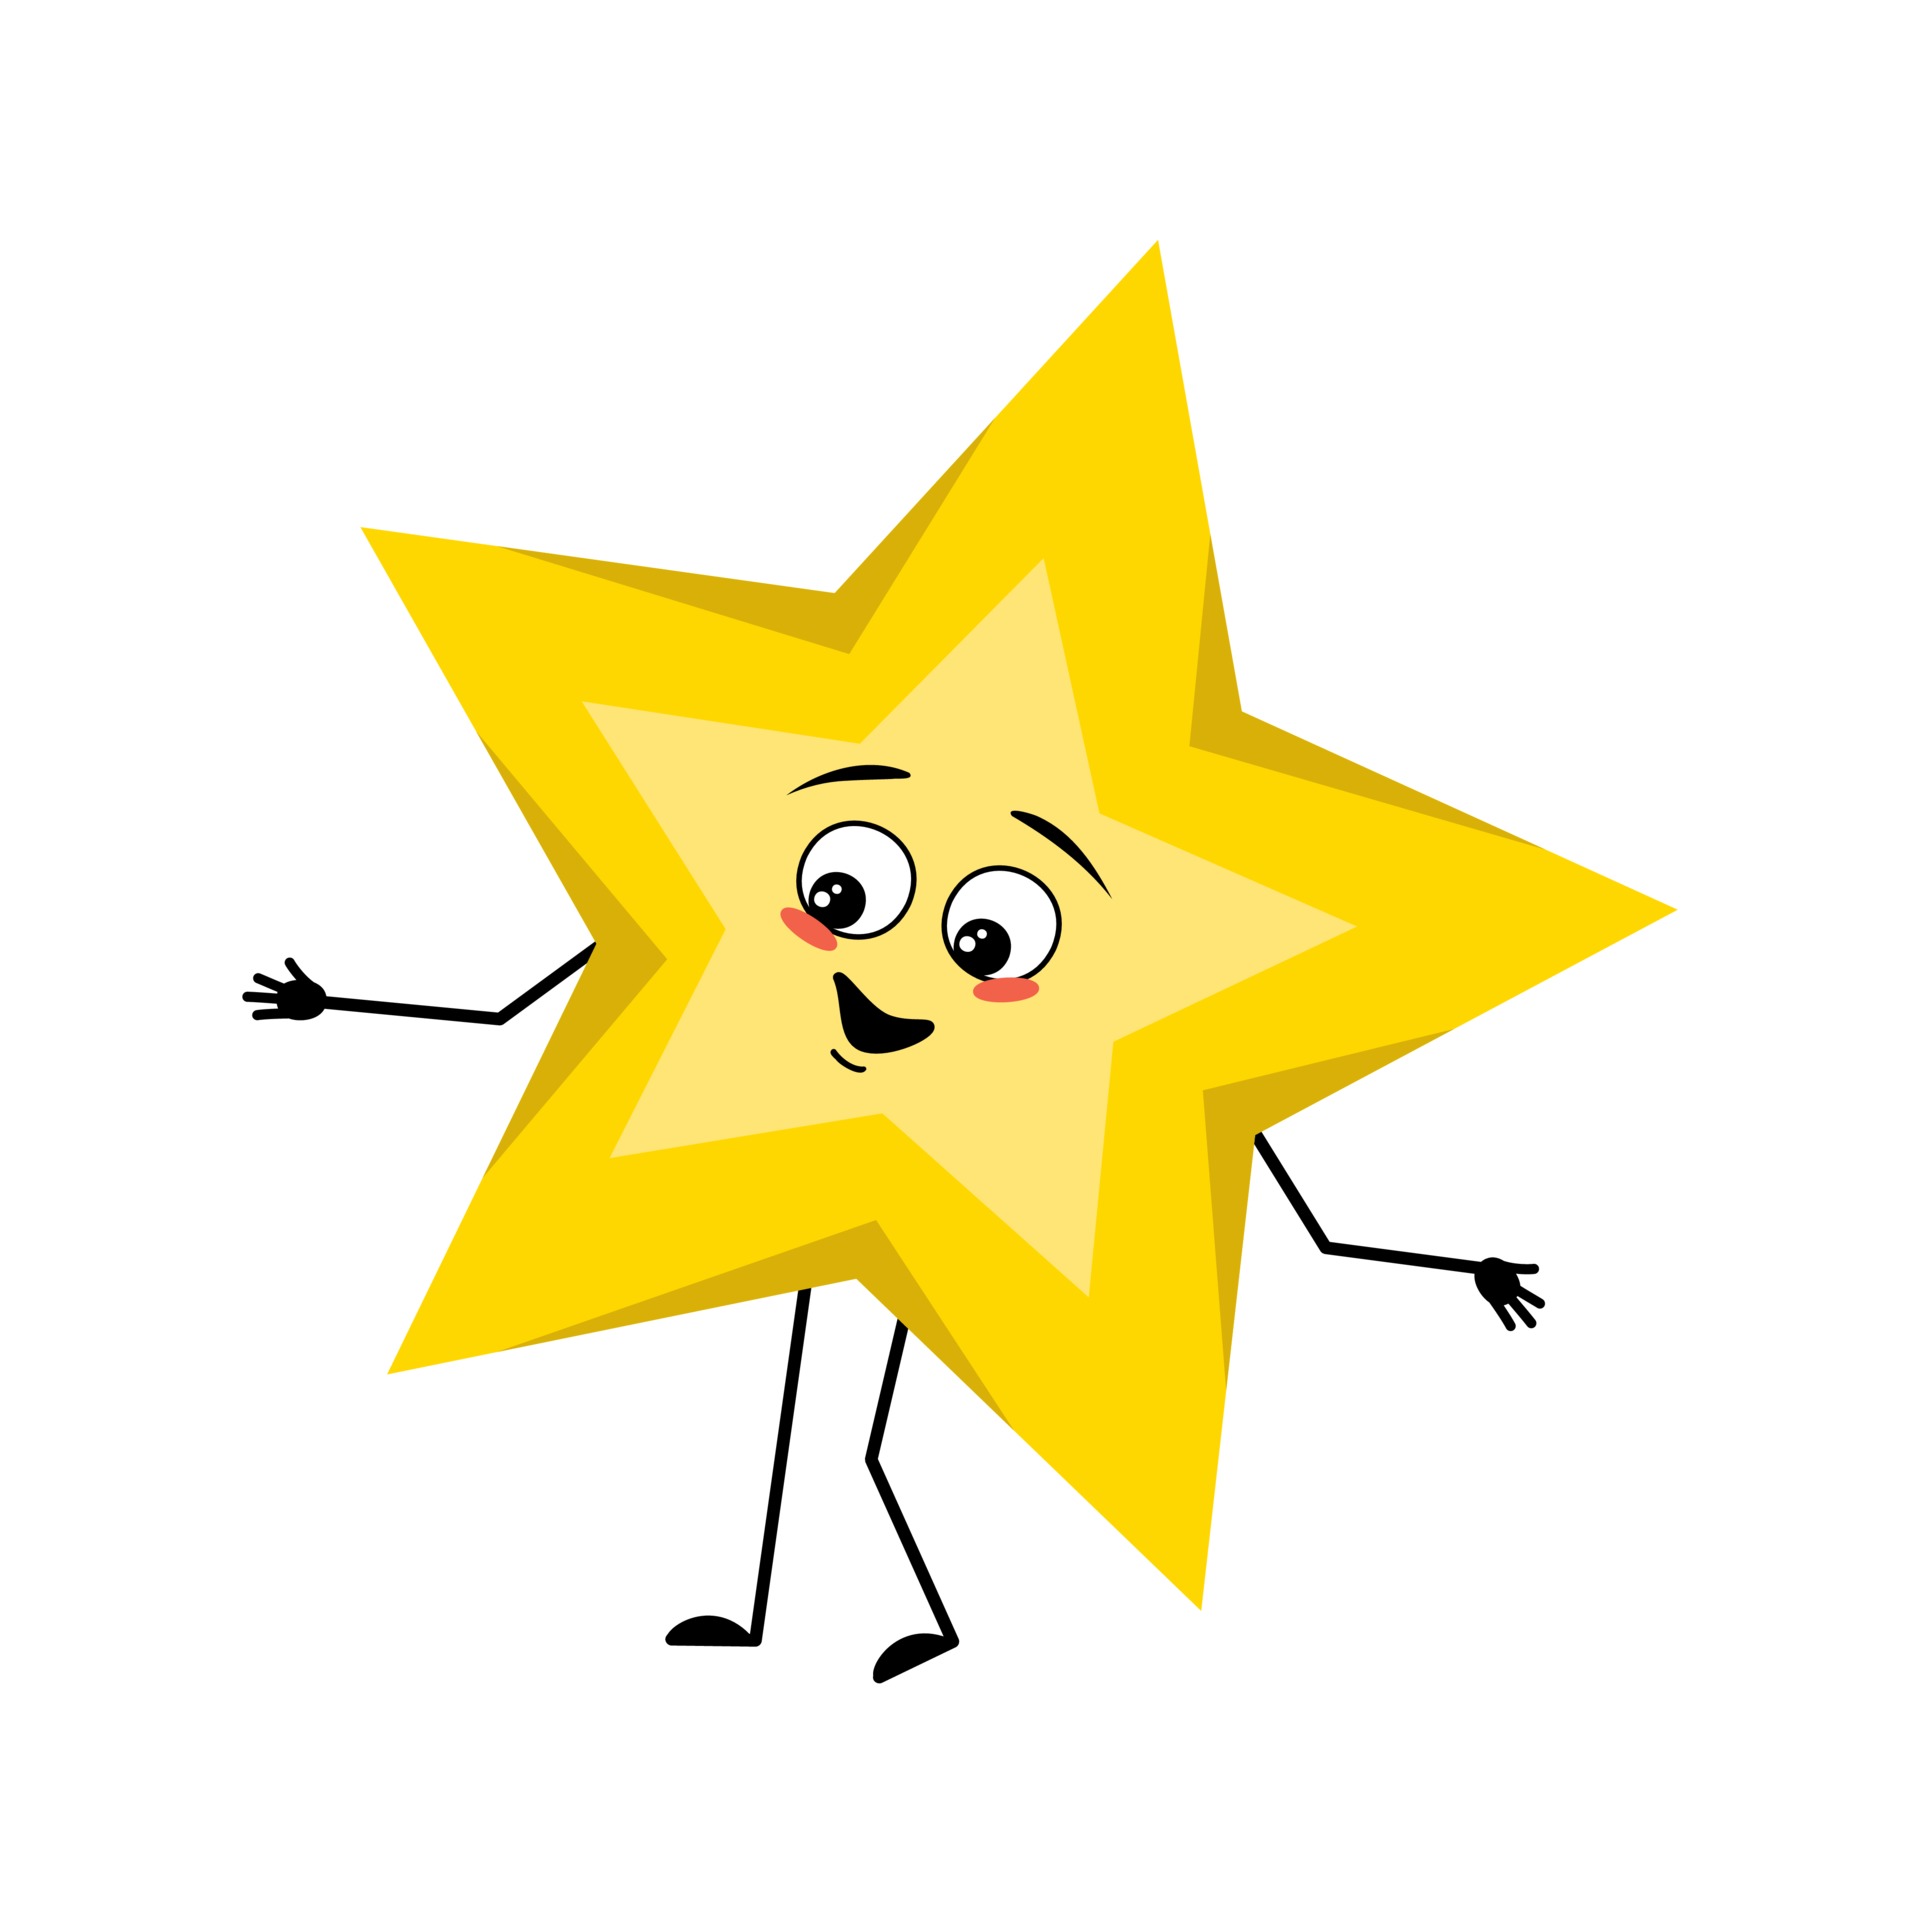 Stern Gesicht Glücklich - Kostenlose Vektorgrafik auf Pixabay - Pixabay